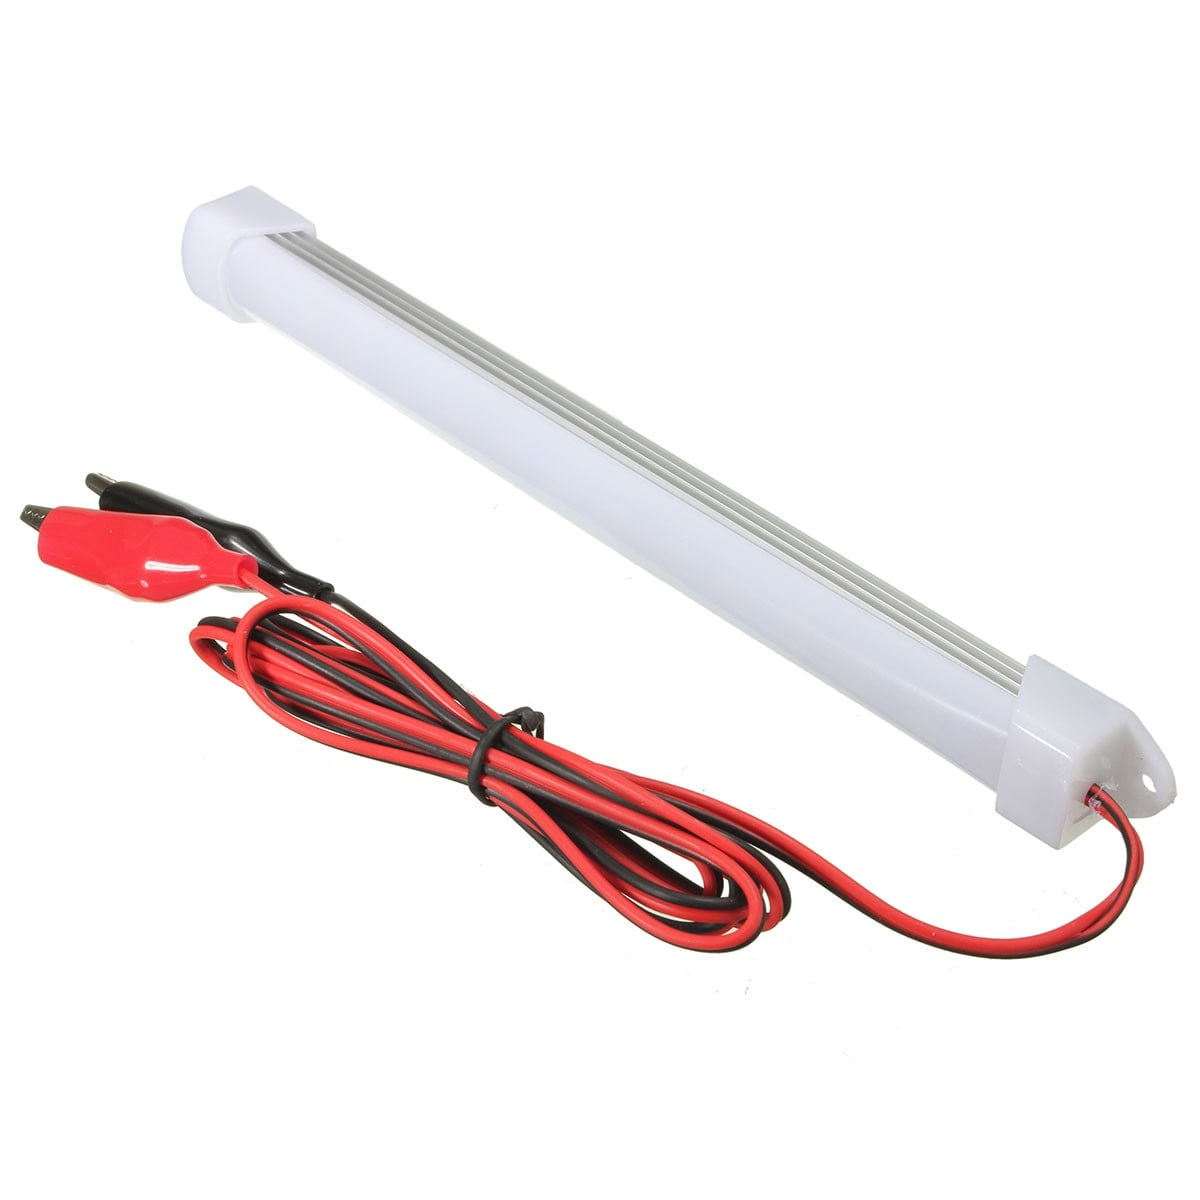 SUNWAN 12V 5W 15 LEDs White Lighting Bar Lamp for Car Van Caravan Boat Motorhome Kitchen Bathroom Car Interior Light Strip 2pcs